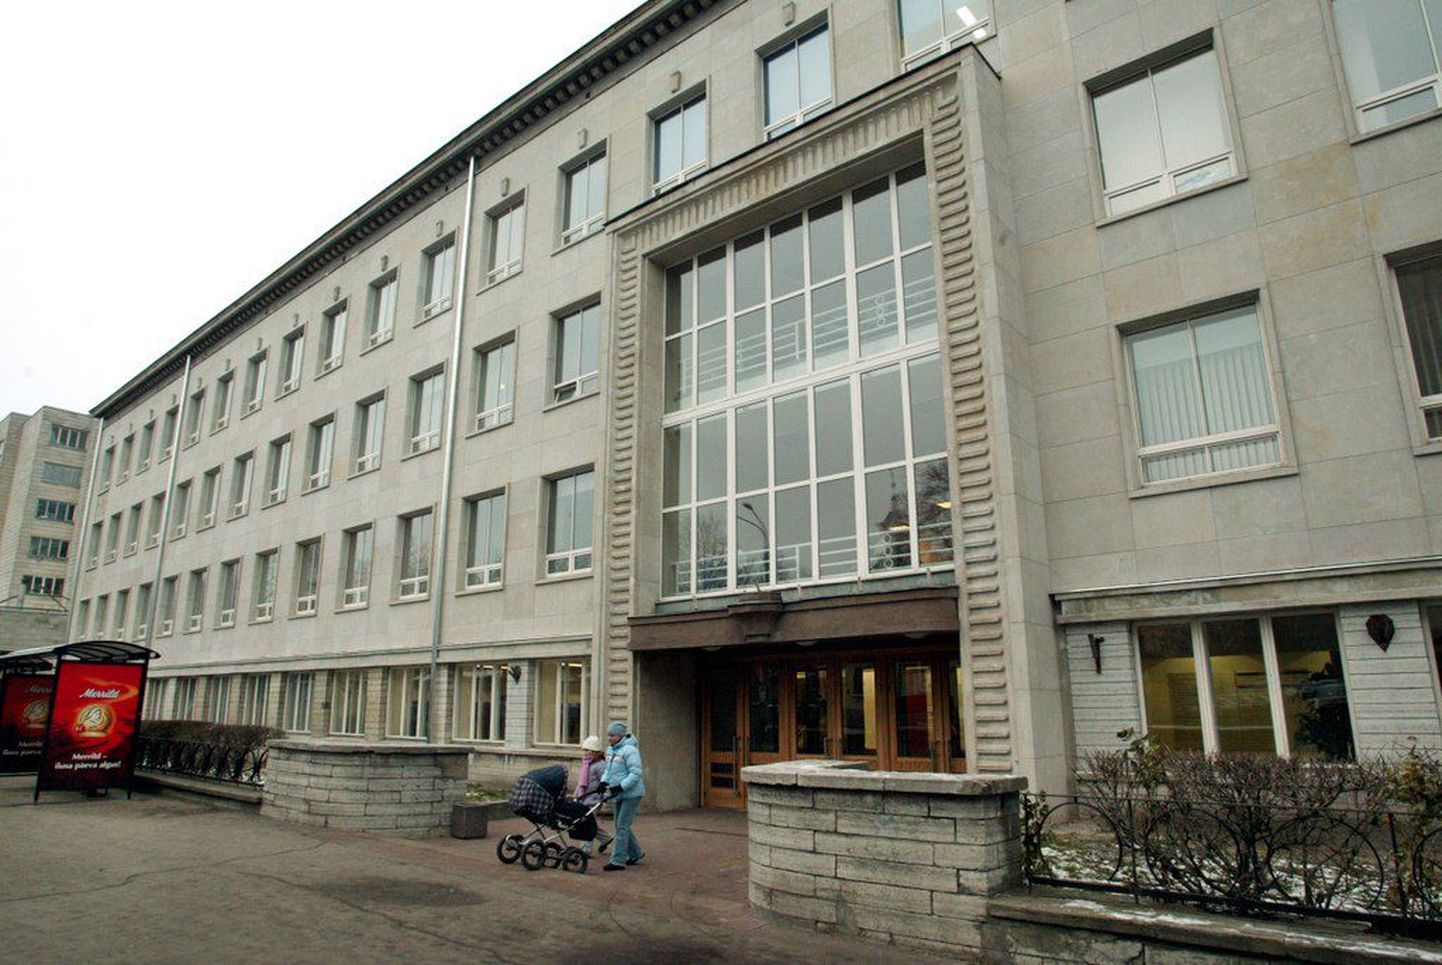 Tallinna ülikooli peahoone Narva maantee ääres.